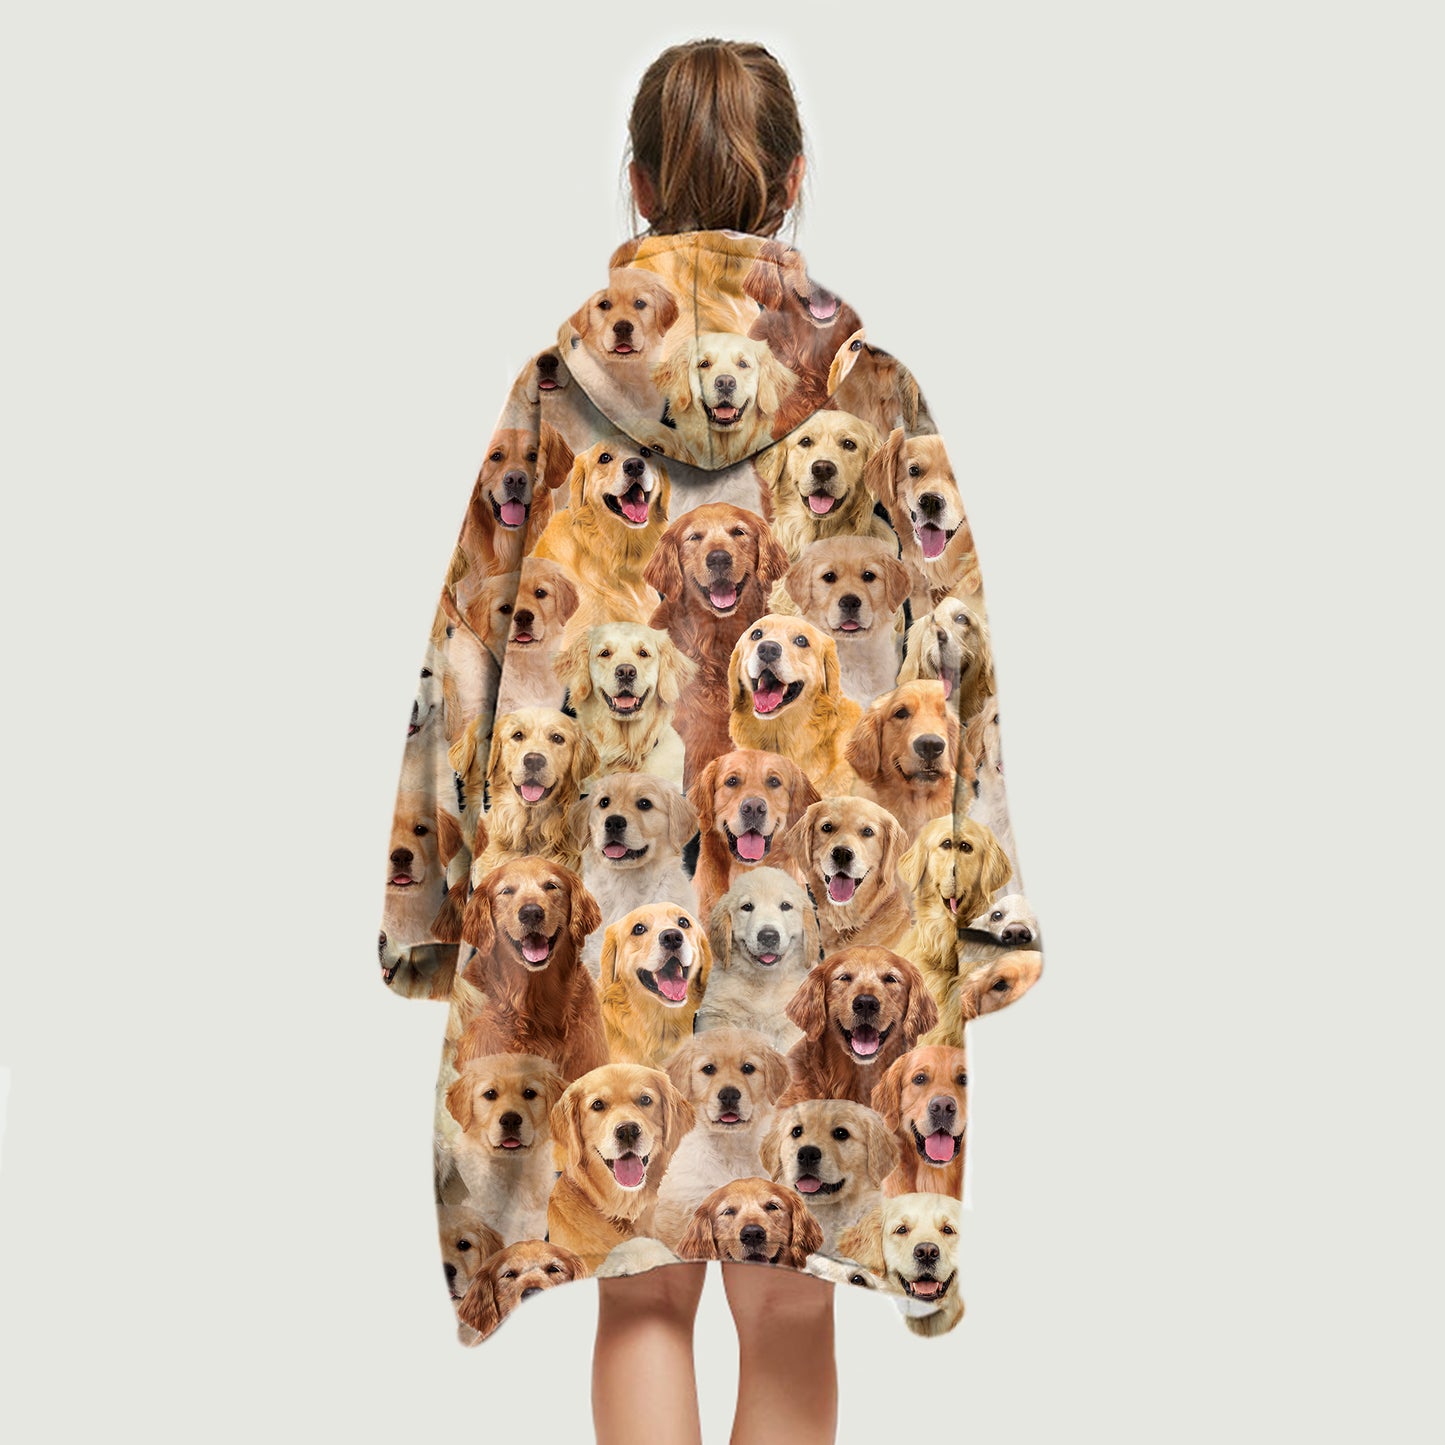 Warm Winter With Golden Retrievers - Fleece Blanket Hoodie